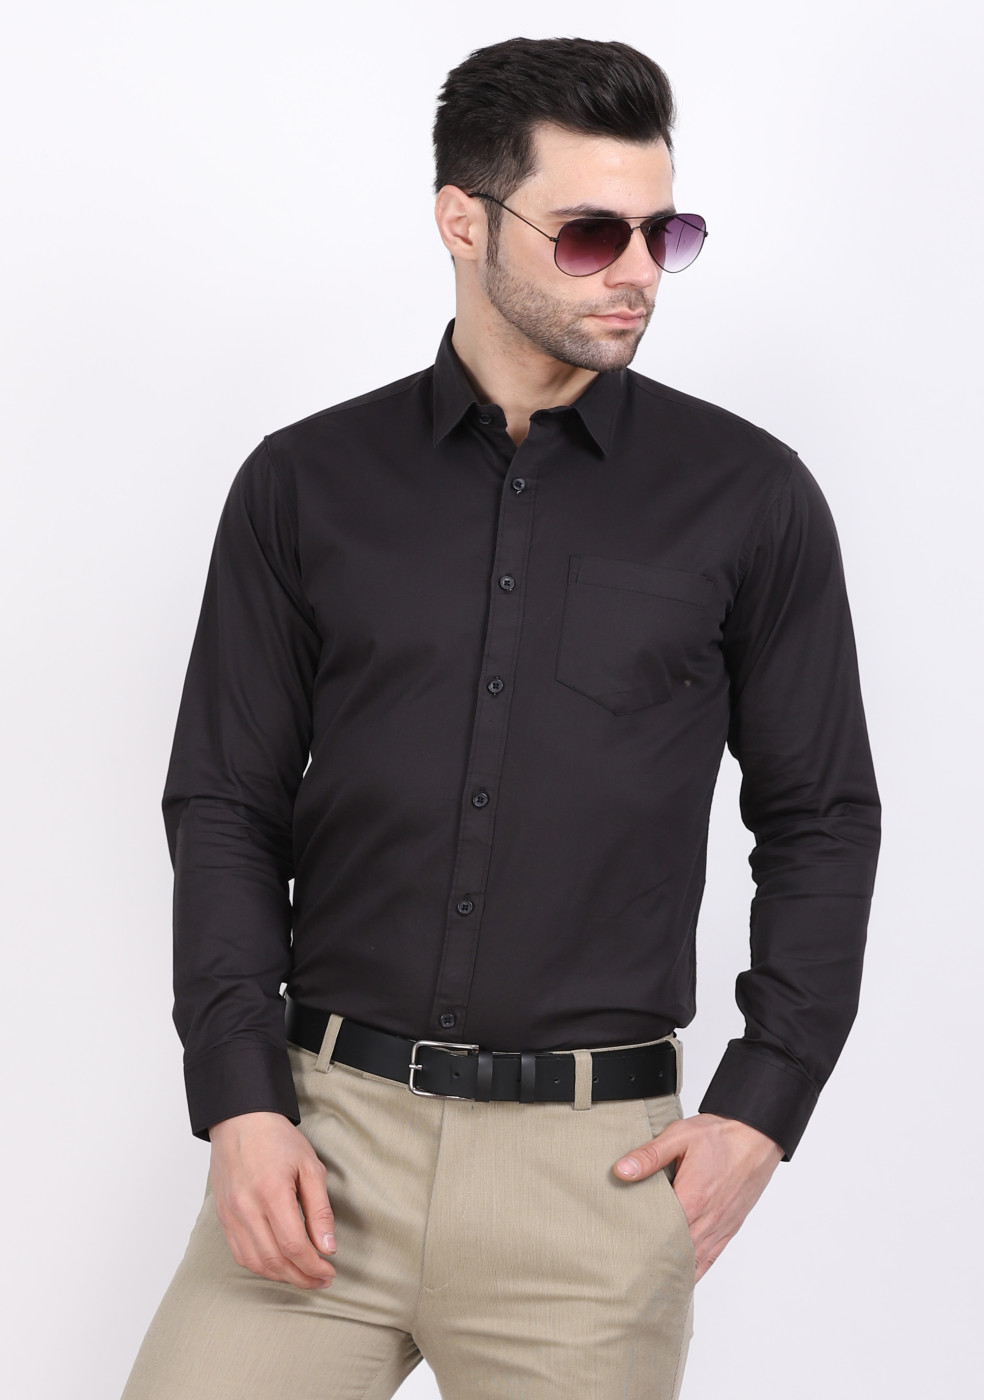 ASHTOM Jet Black Plain Formal 100% Cotton Shirt For Men